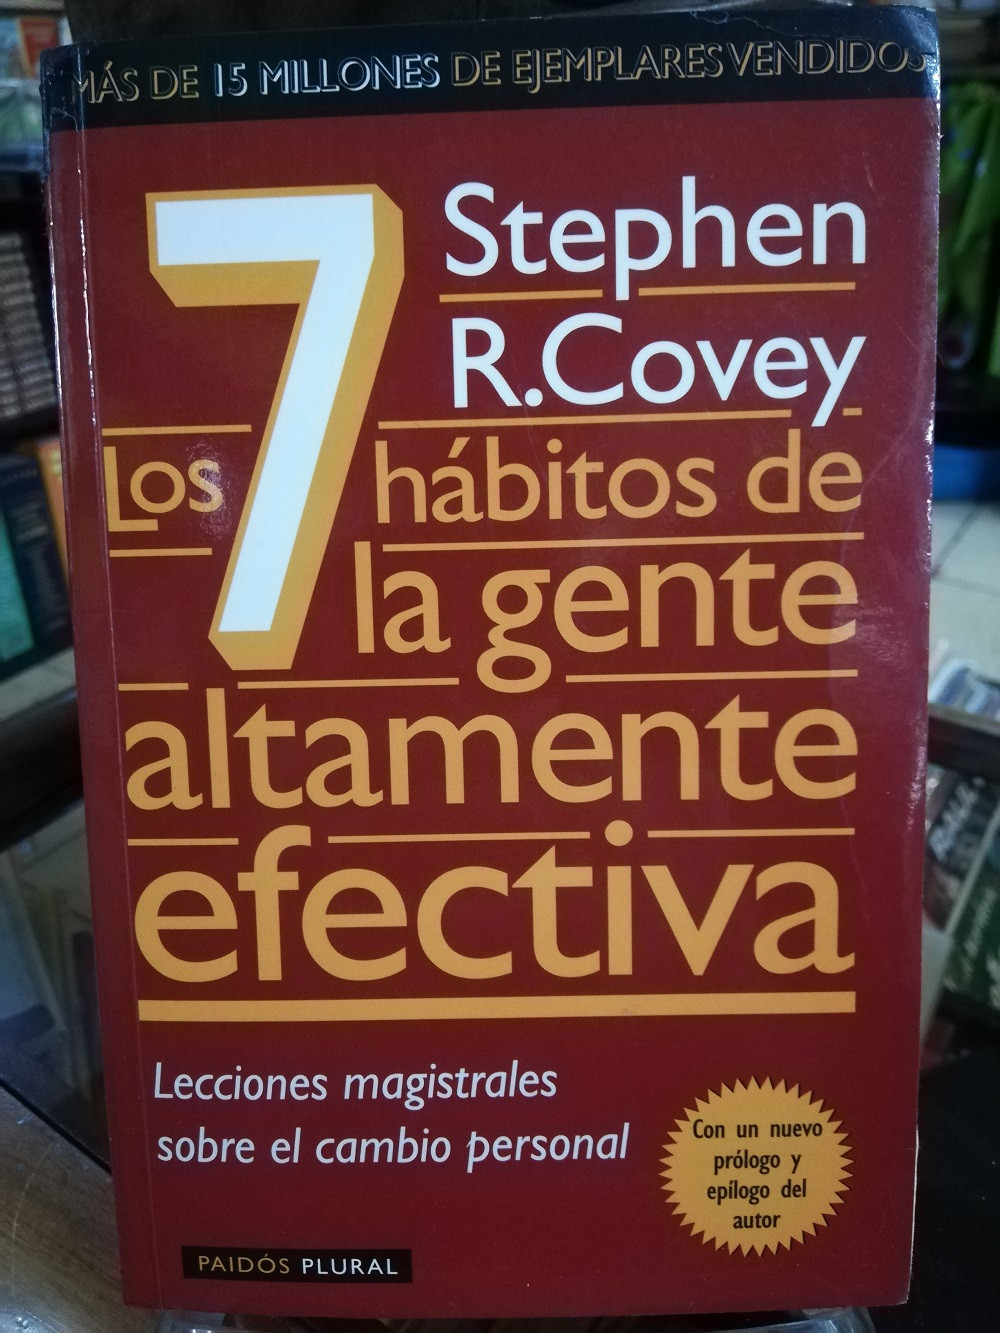 Imagen LOS 7 HABITOS DE LA GENTE ALTAMENTE EFECTIVA - STEPHEN COVEY